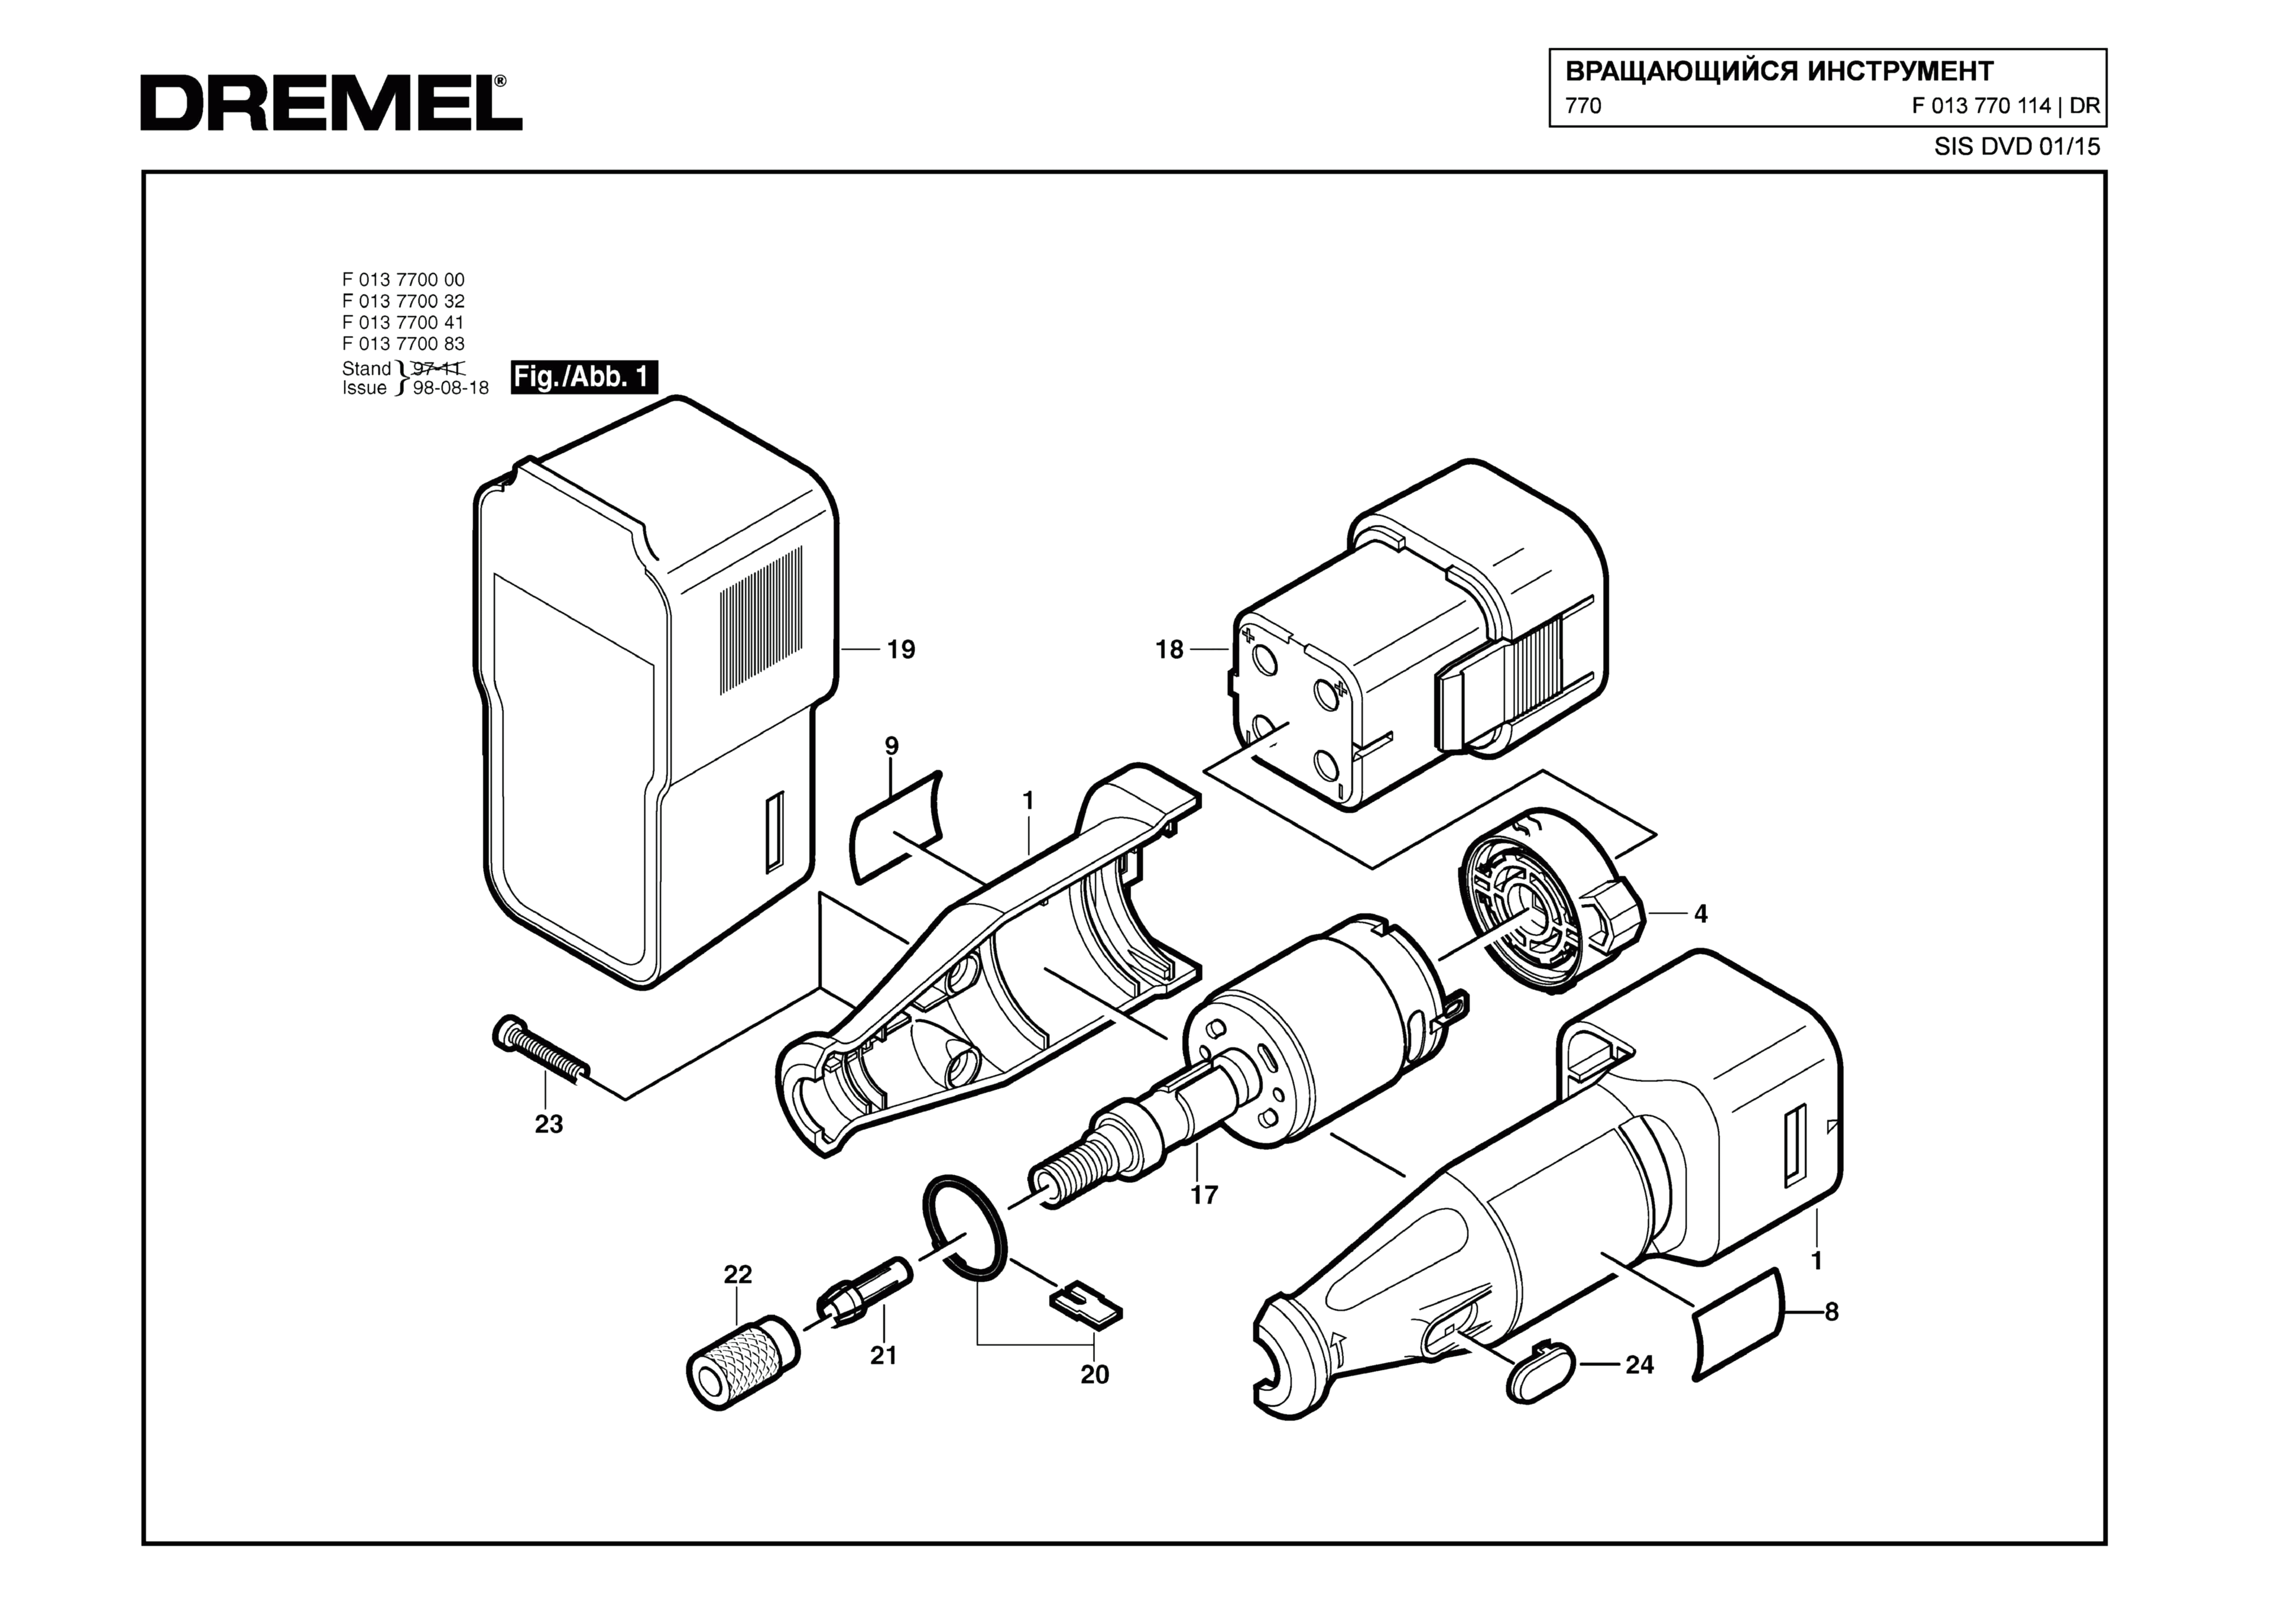 Шлифовальная машина Dremel 770 (ТИП F013770114)